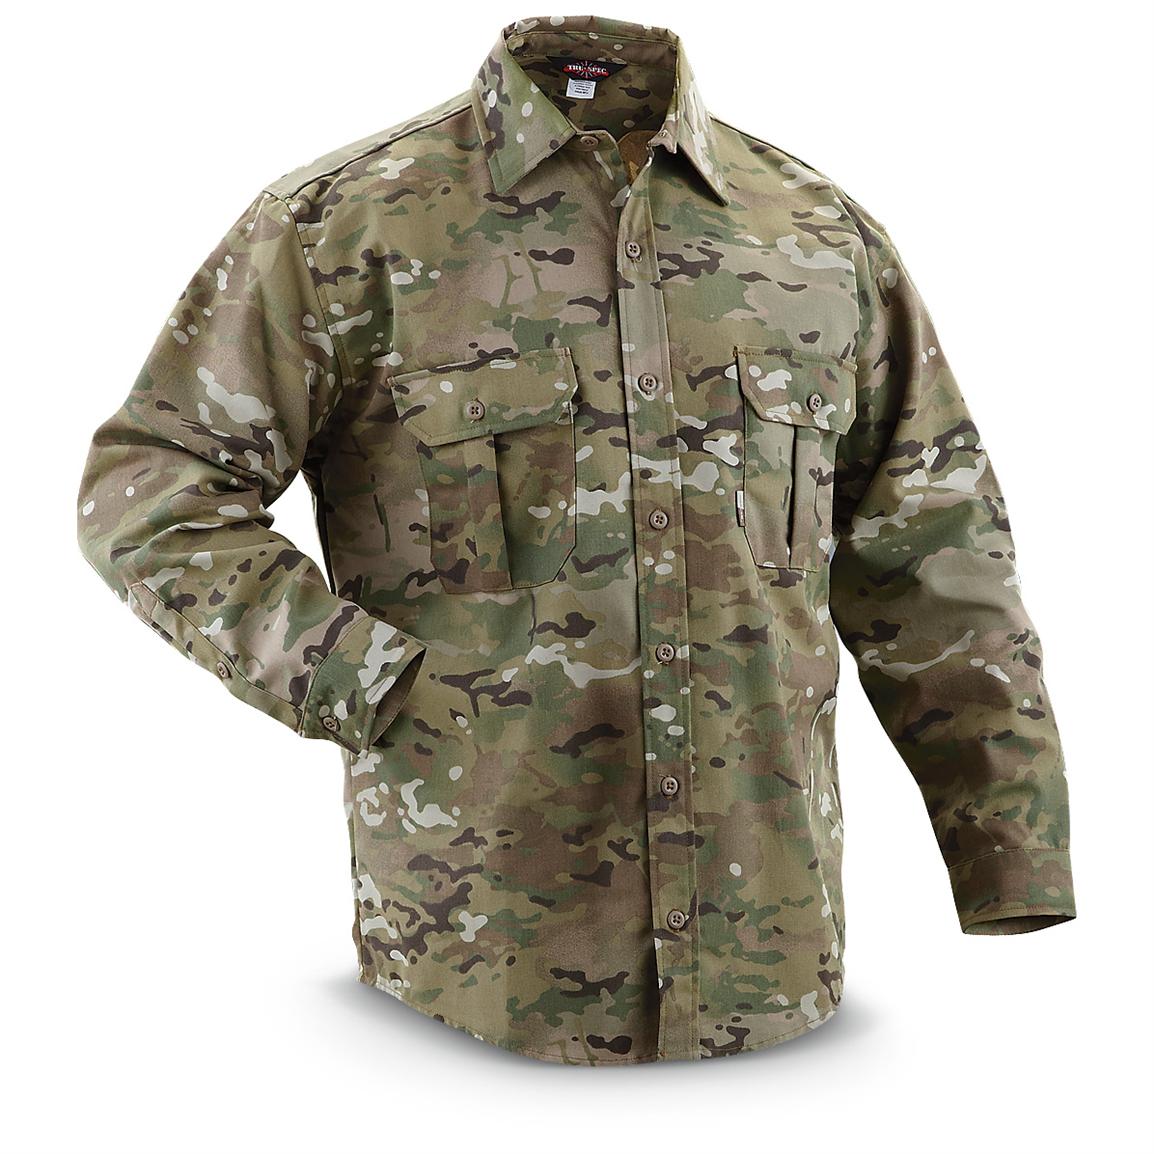 TRU - SPEC® Multicam® Hunting Field Shirt - 208648, Shirts at Sportsman ...